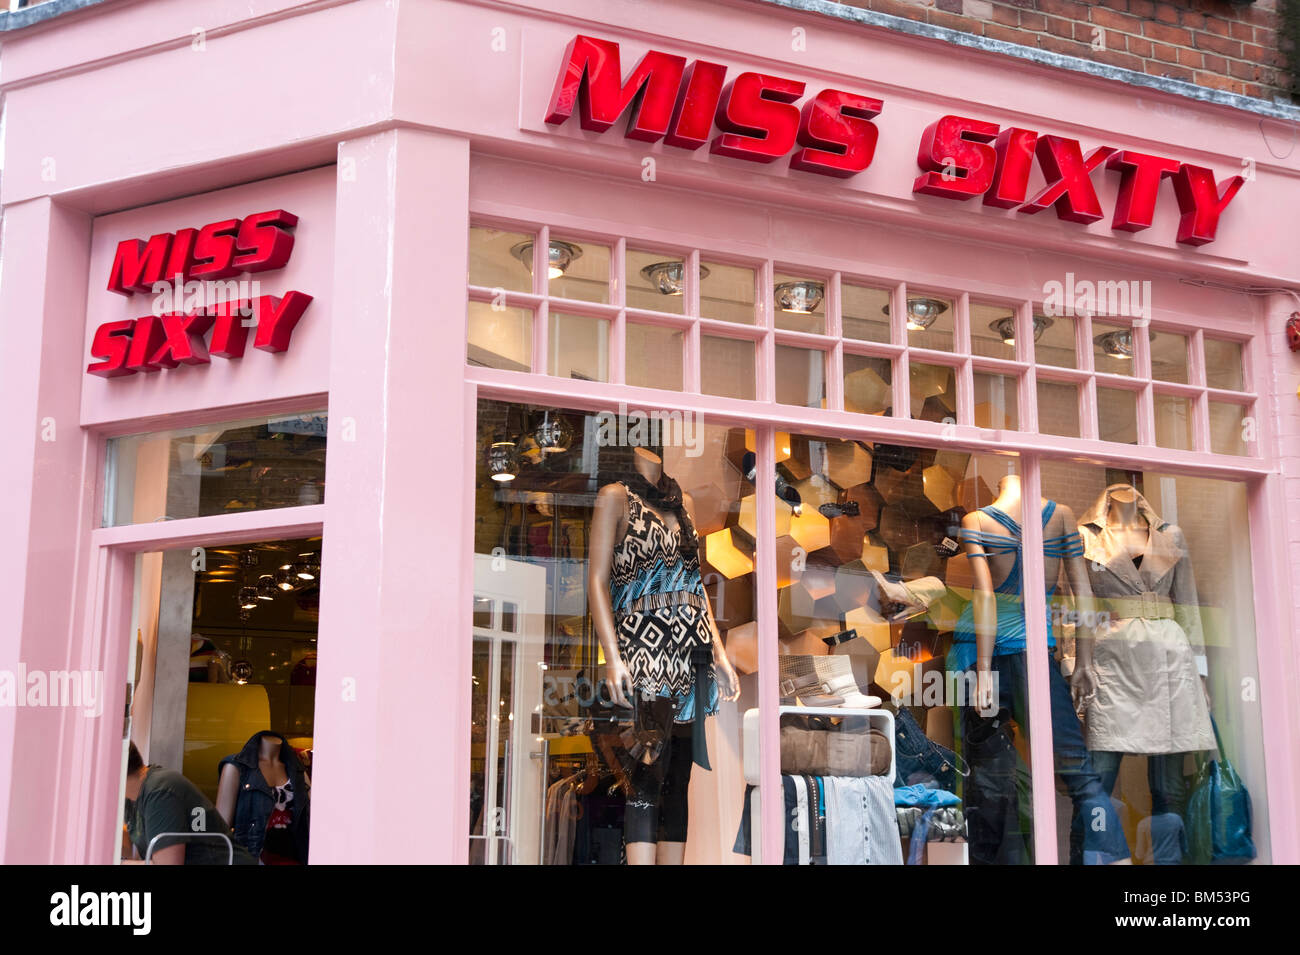 Miss sixty immagini e fotografie stock ad alta risoluzione - Alamy